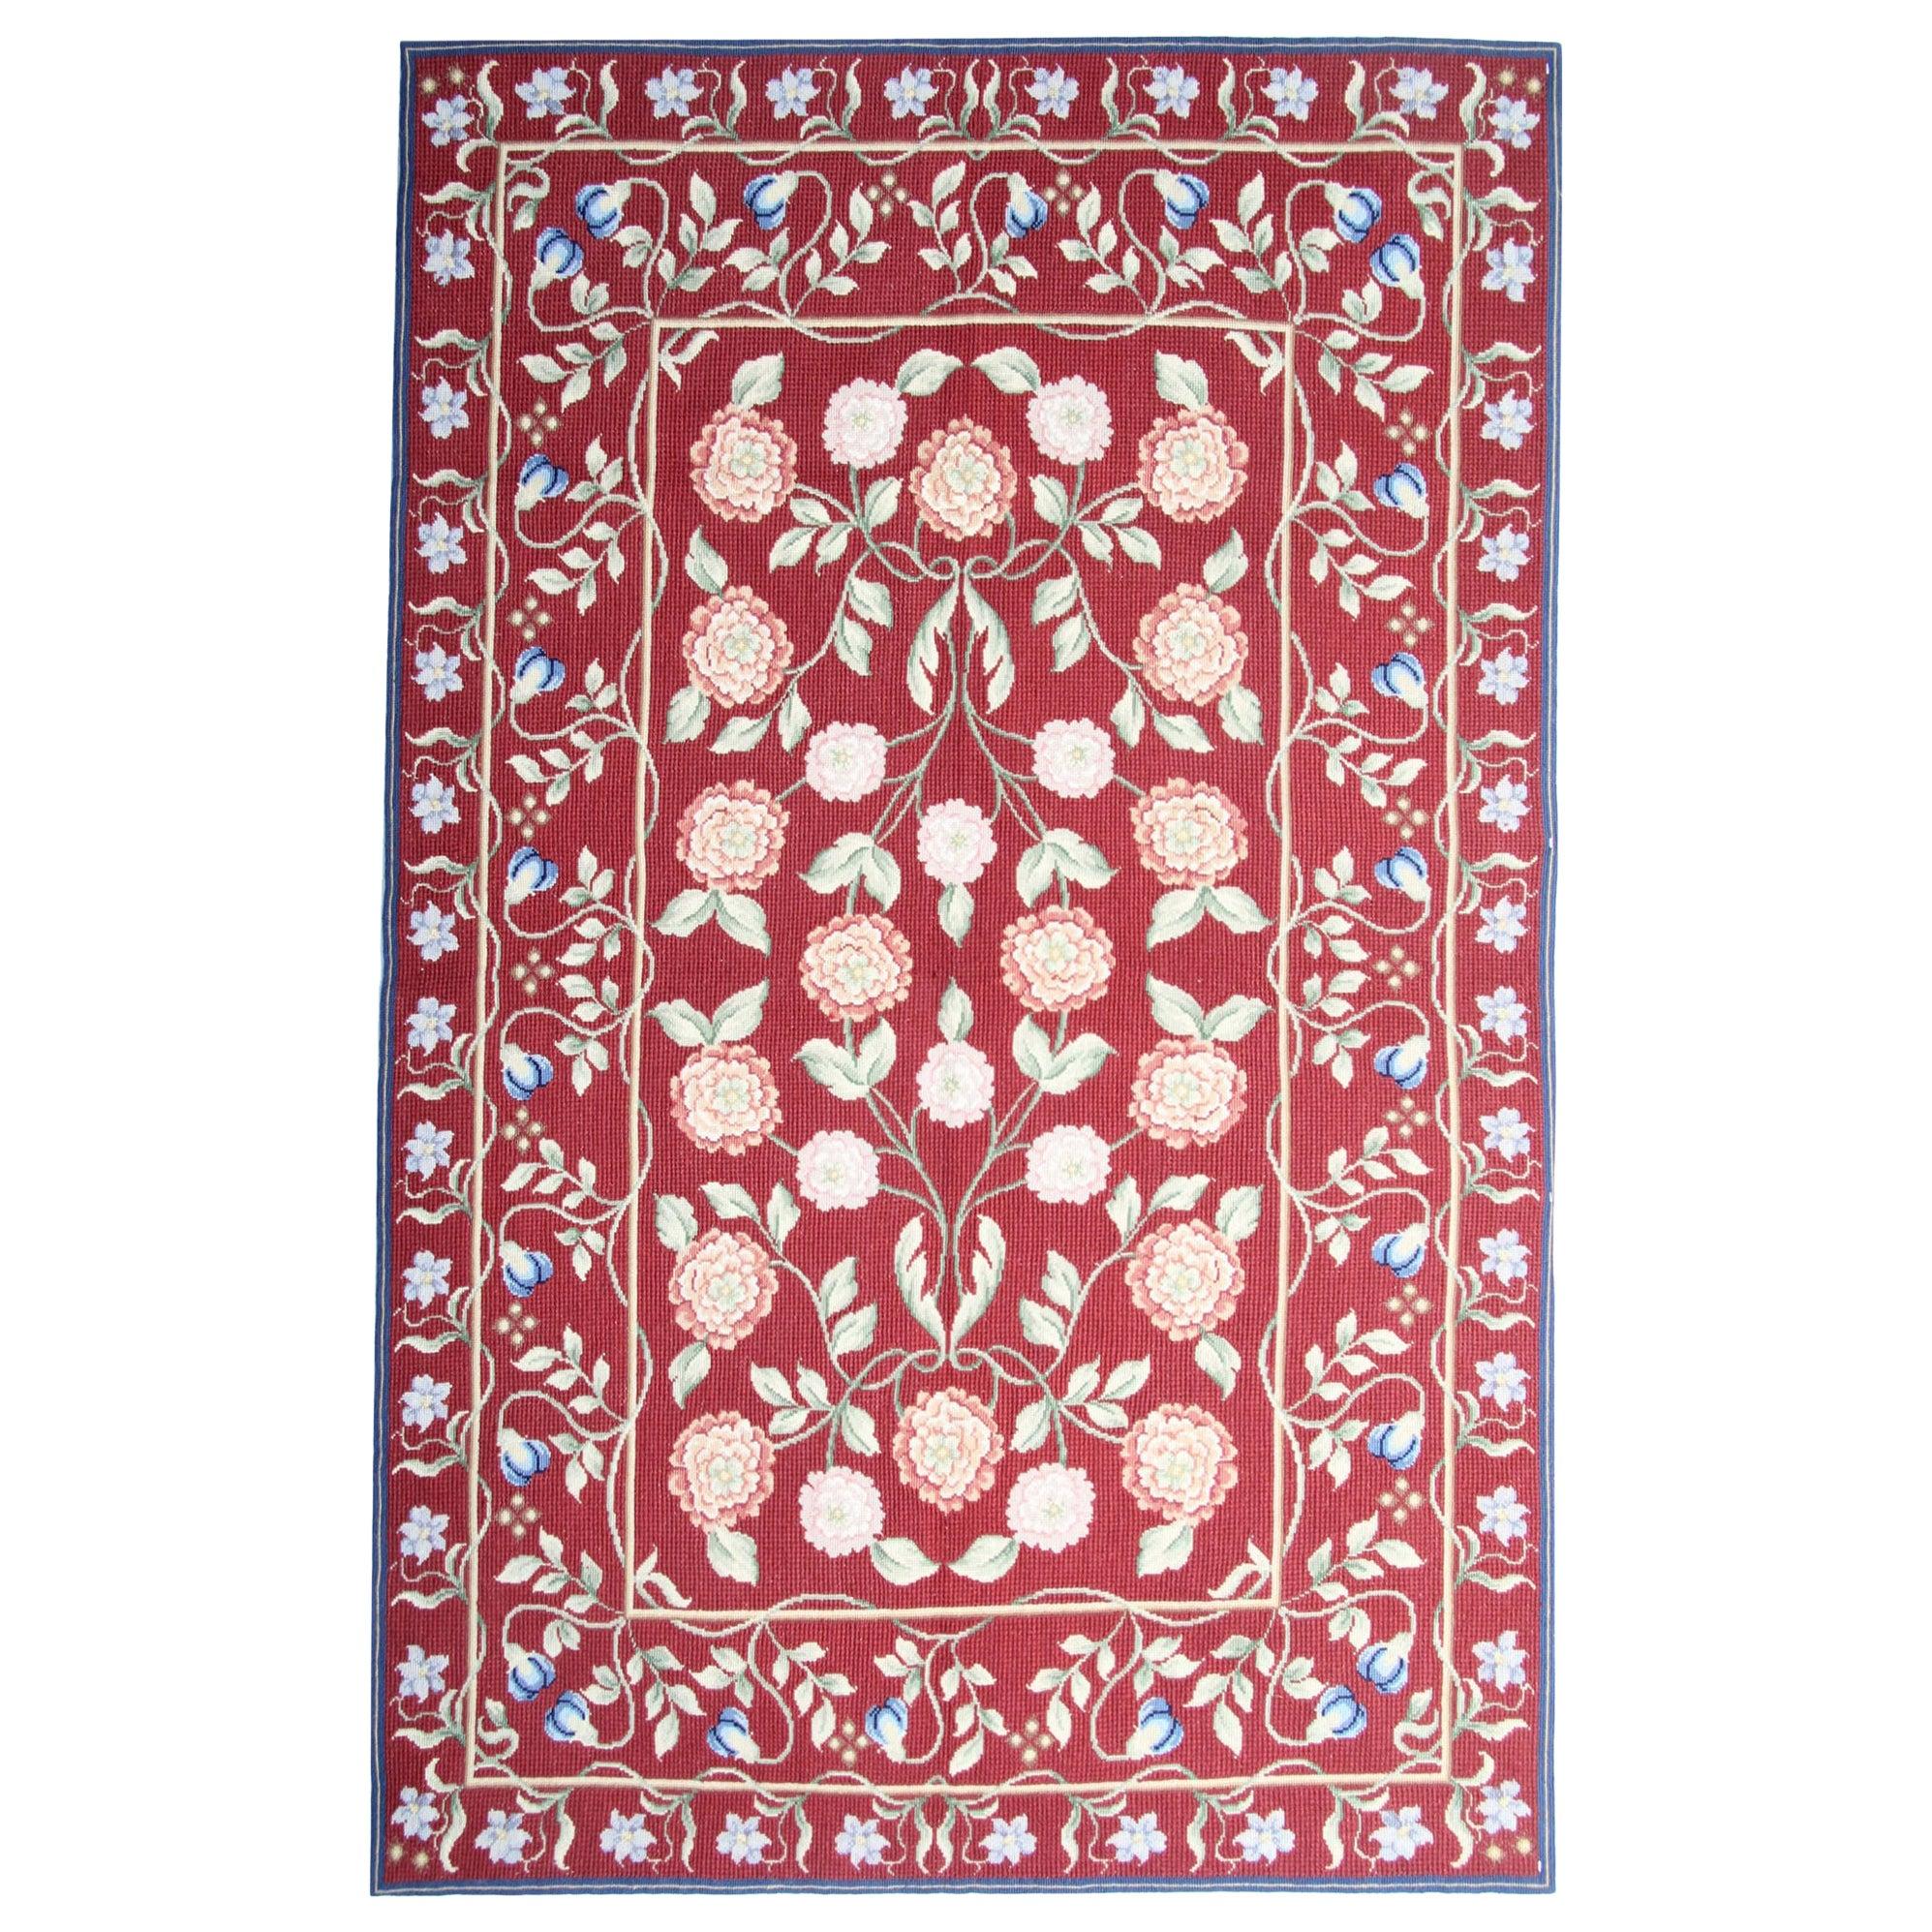 Handgewebter Teppich im Aubusson-Stil, traditioneller roter geblümter Teppich